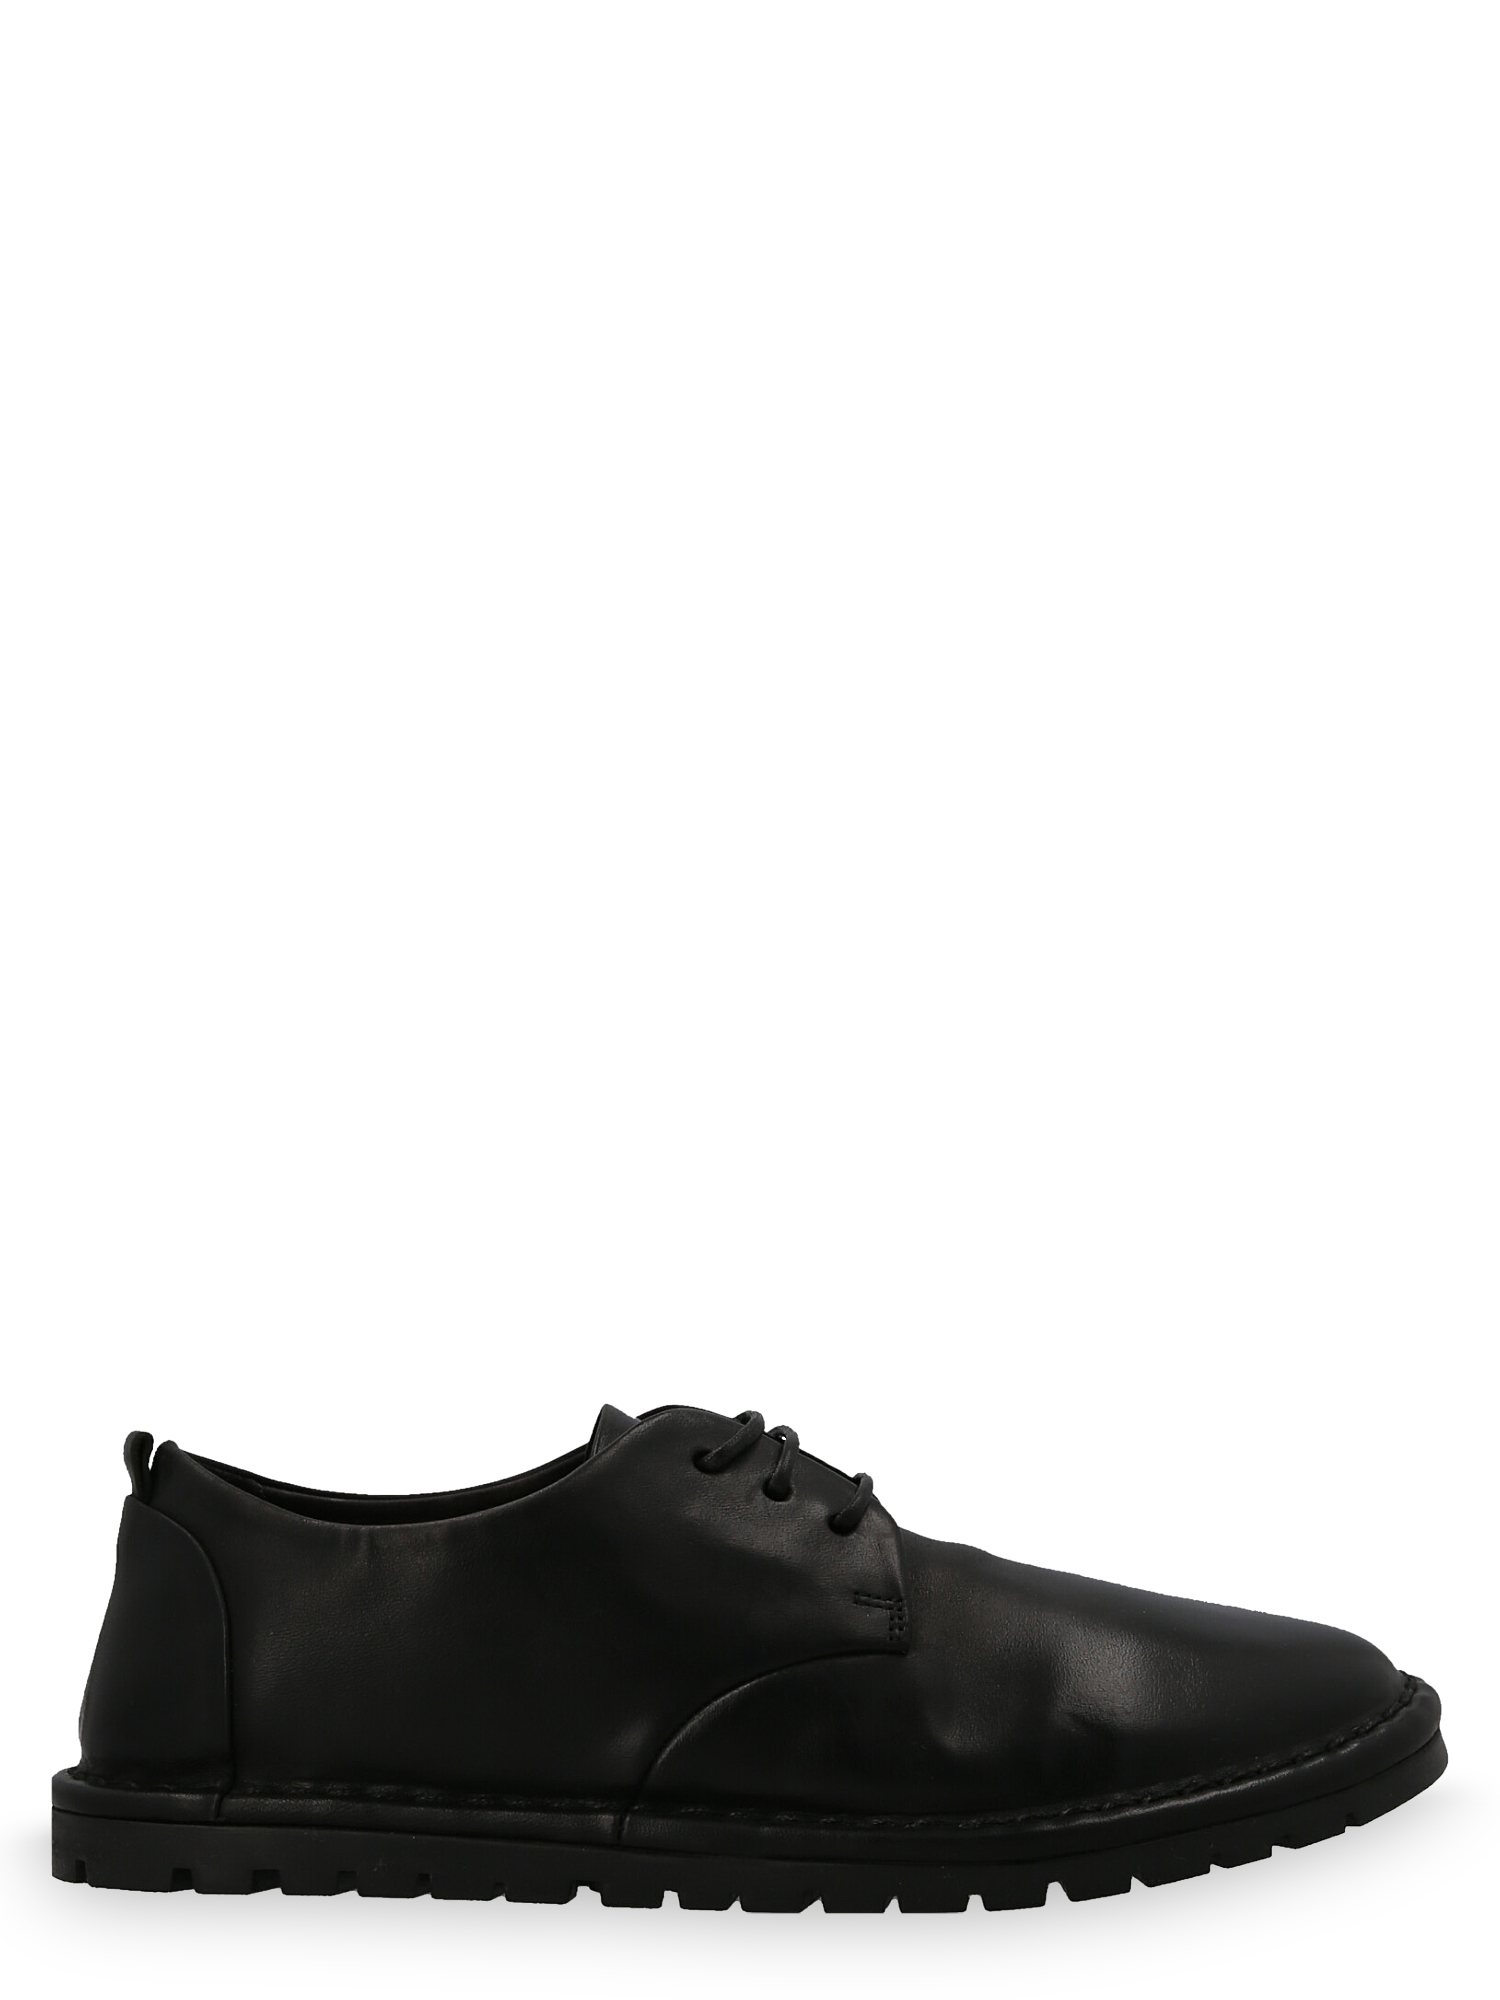 Chaussures À Lacets Pour Femme - Marsell - En Leather Black - Taille: IT 35 - EU 35